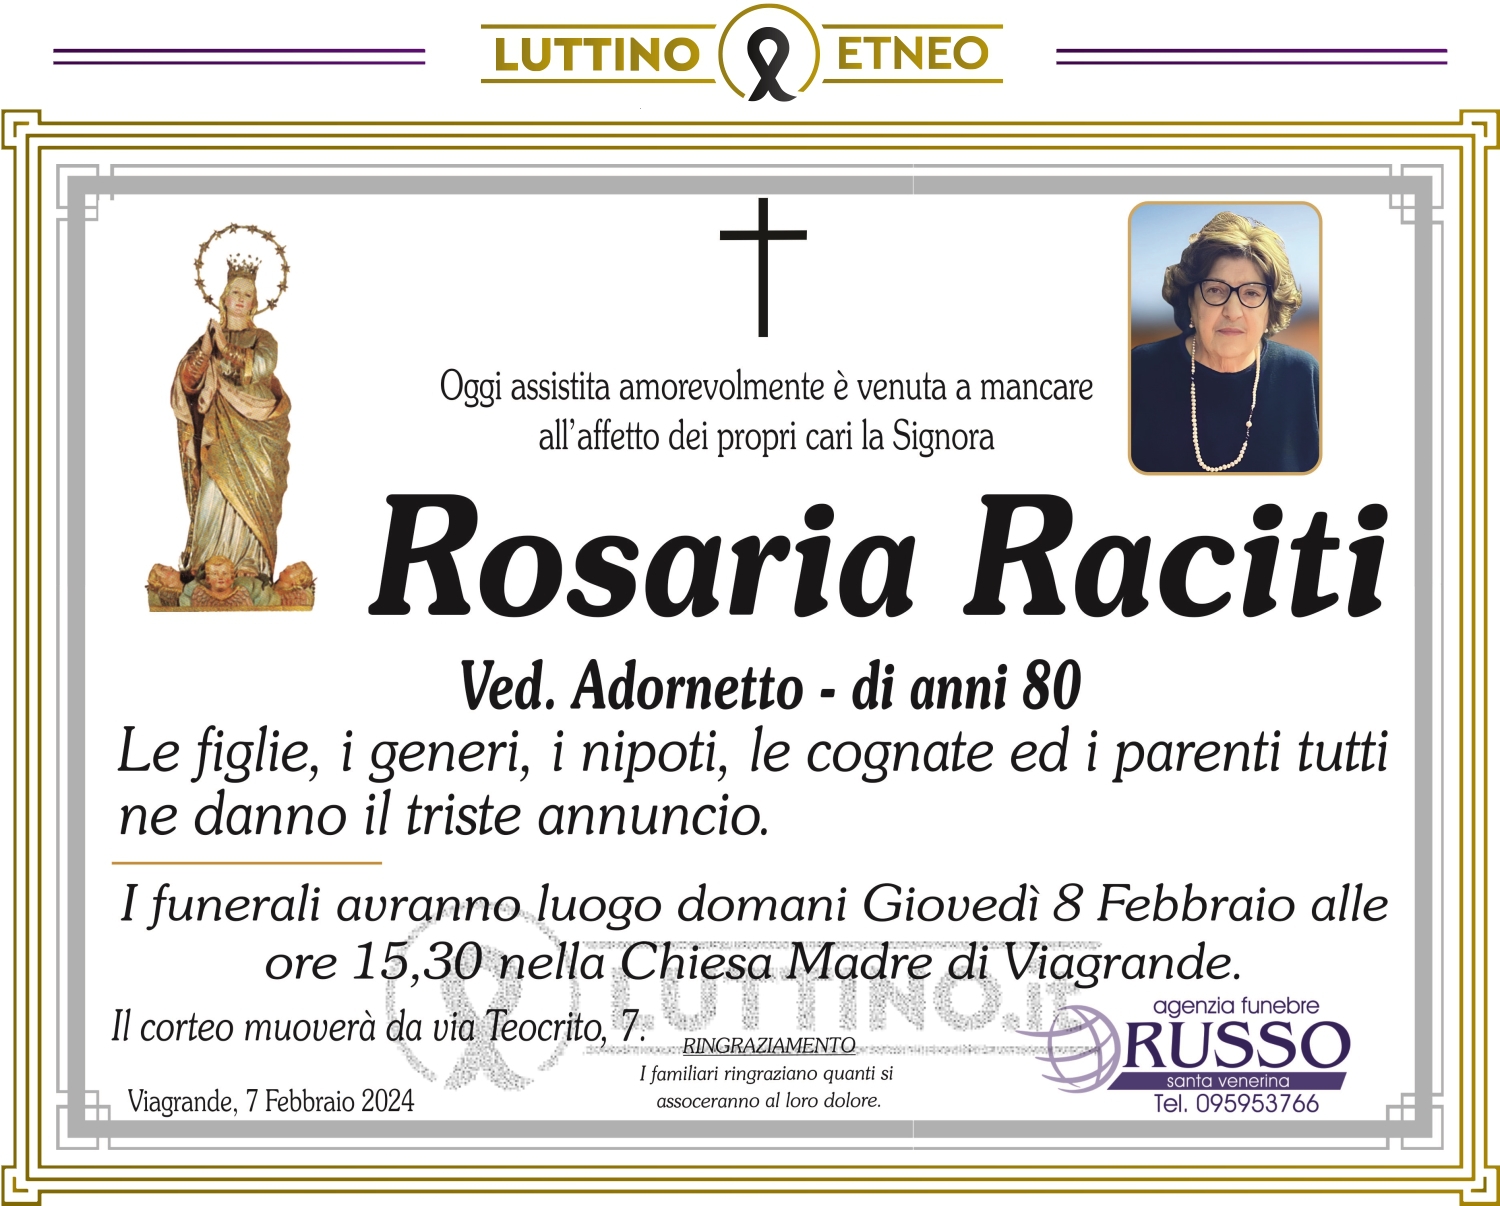 Rosaria Raciti